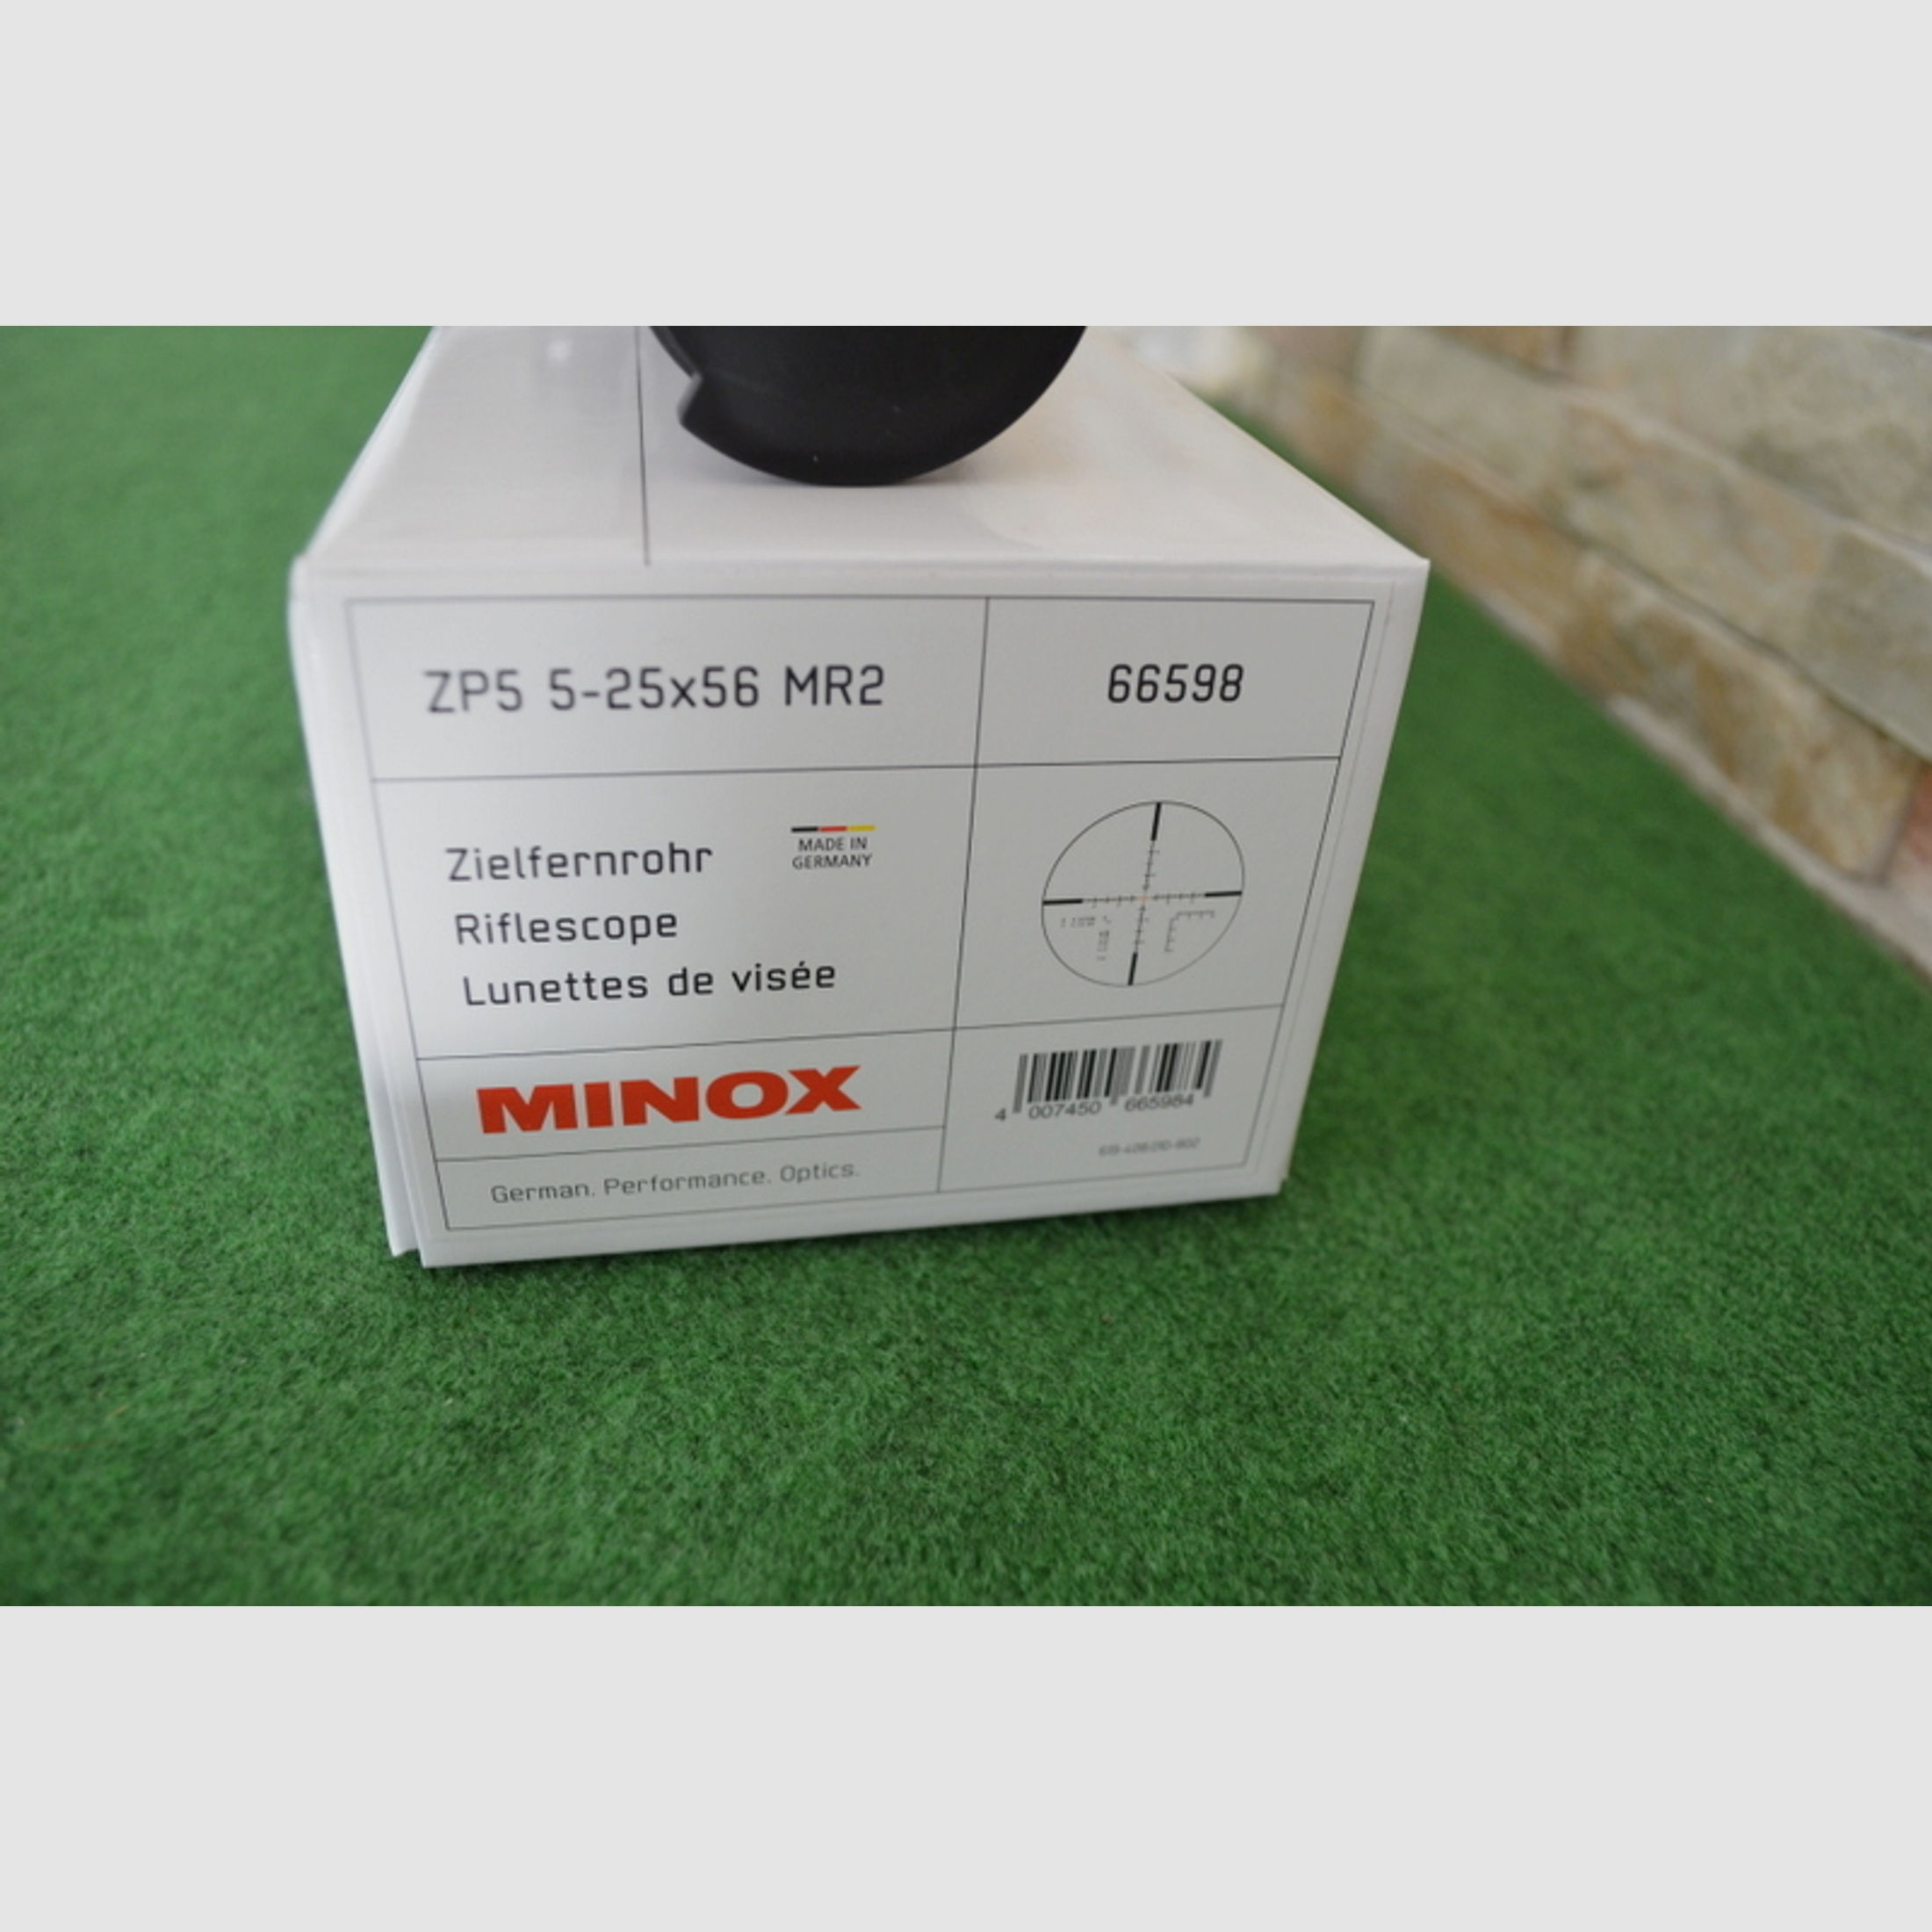 Minox ZP5 5-25x56